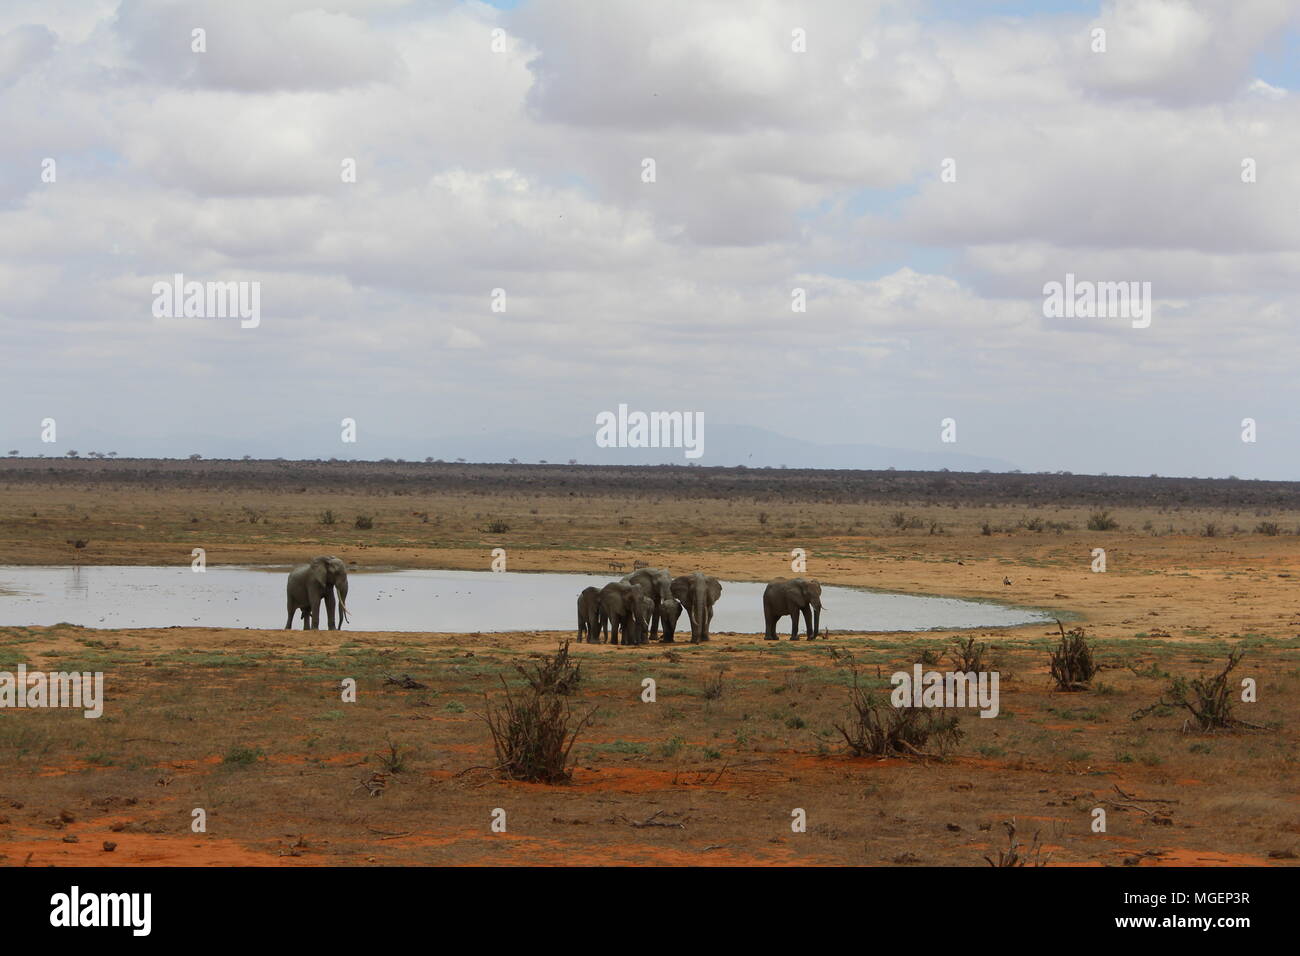 Elefanten im Tsavo Nationalpark in Kenia mit den blauen Himmel und die Savanne im Hintergrund mit seinen hellen Farben rot tendenziell Stockfoto